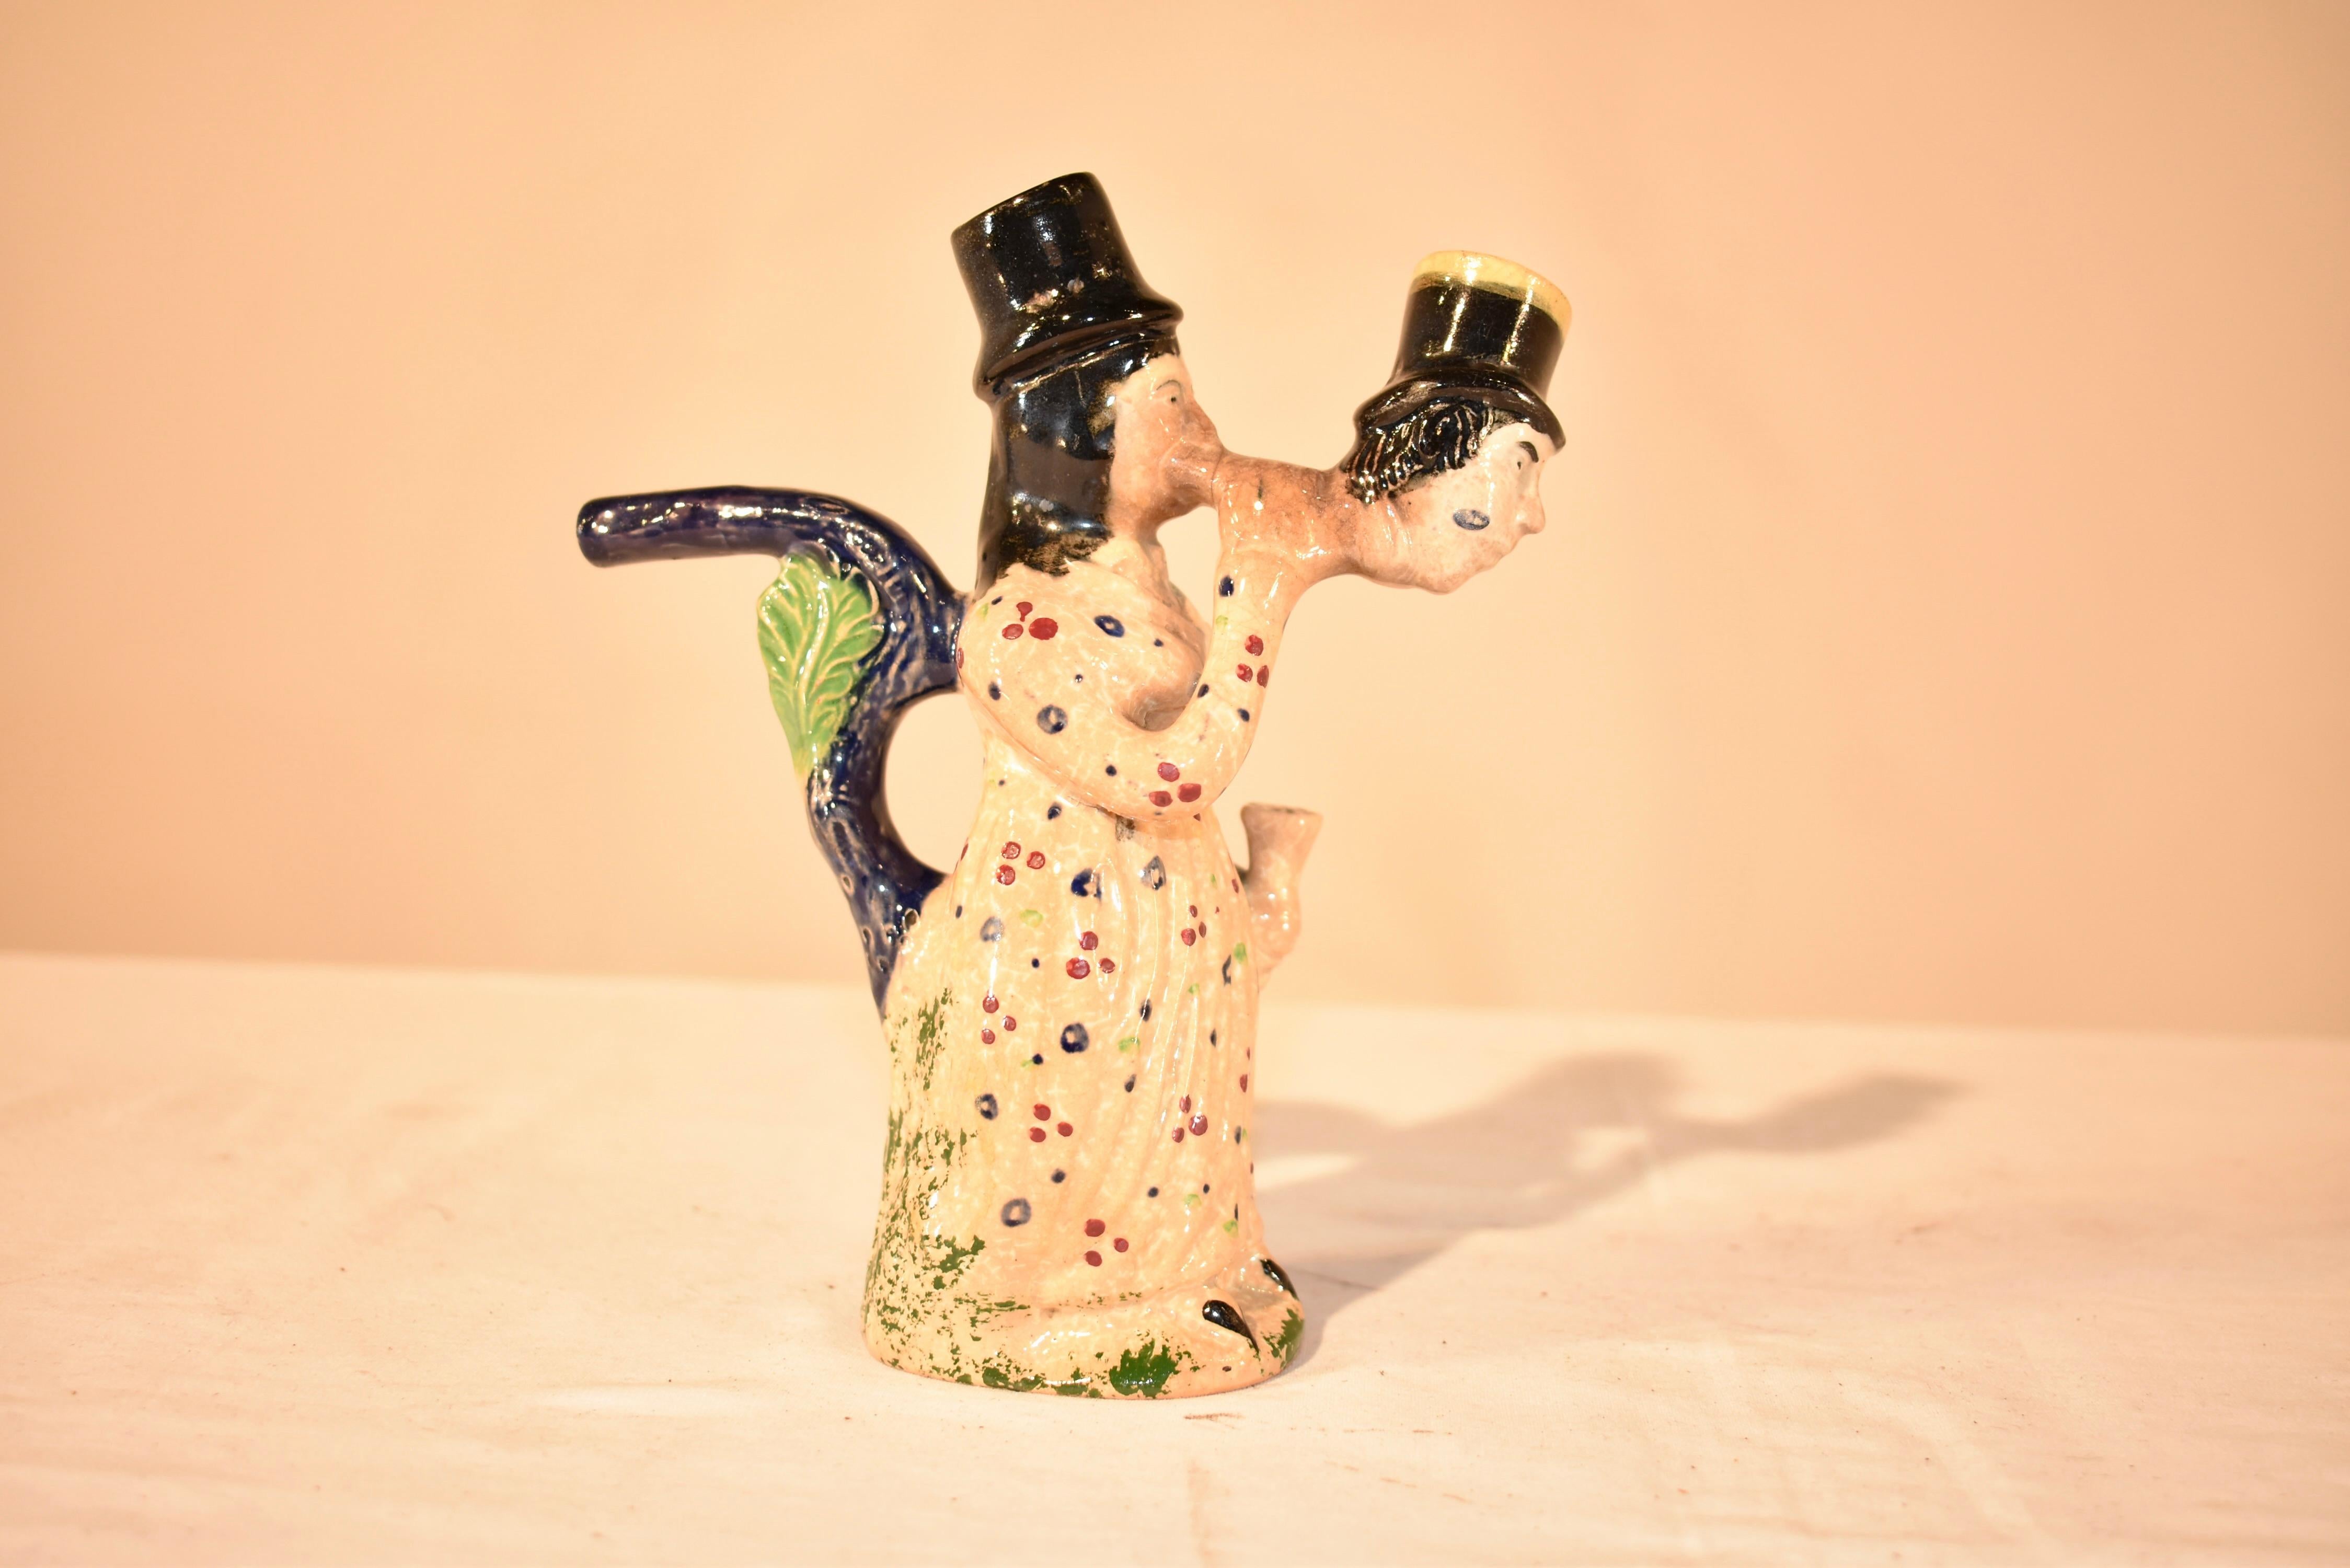 Début du 19e siècle  Pipe Prattware fabriquée dans la région du Staffordshire en Angleterre.  Cette pipe figurative est inhabituelle et représente une femme fumant à travers la tête d'un homme.  Elle est vêtue d'une robe à motifs floraux et porte un